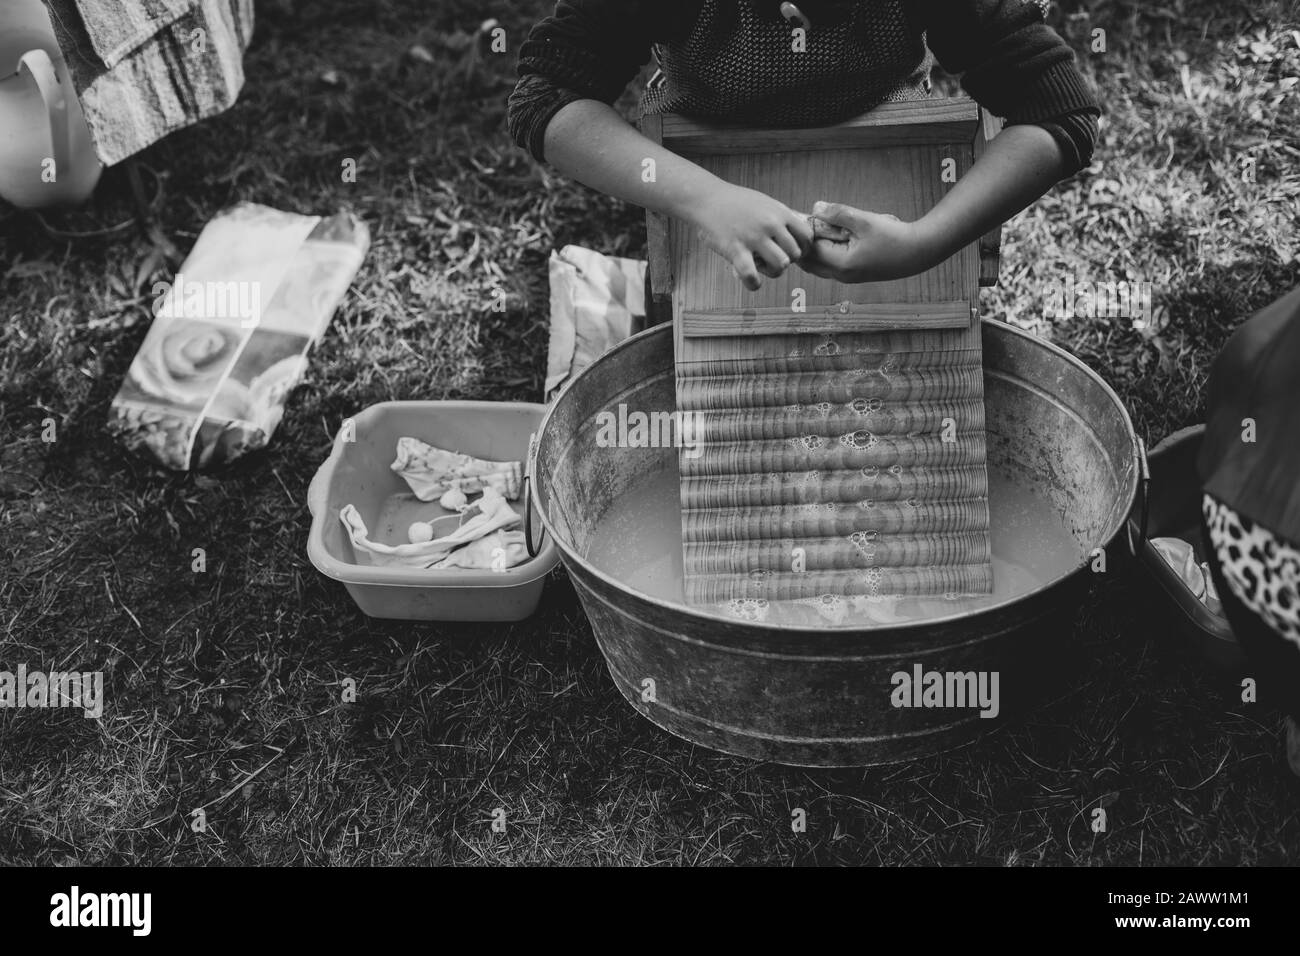 Un enfant se lave des vêtements dans une ancienne baignoire de lavage en zinc avec une planche à laver en bois Banque D'Images